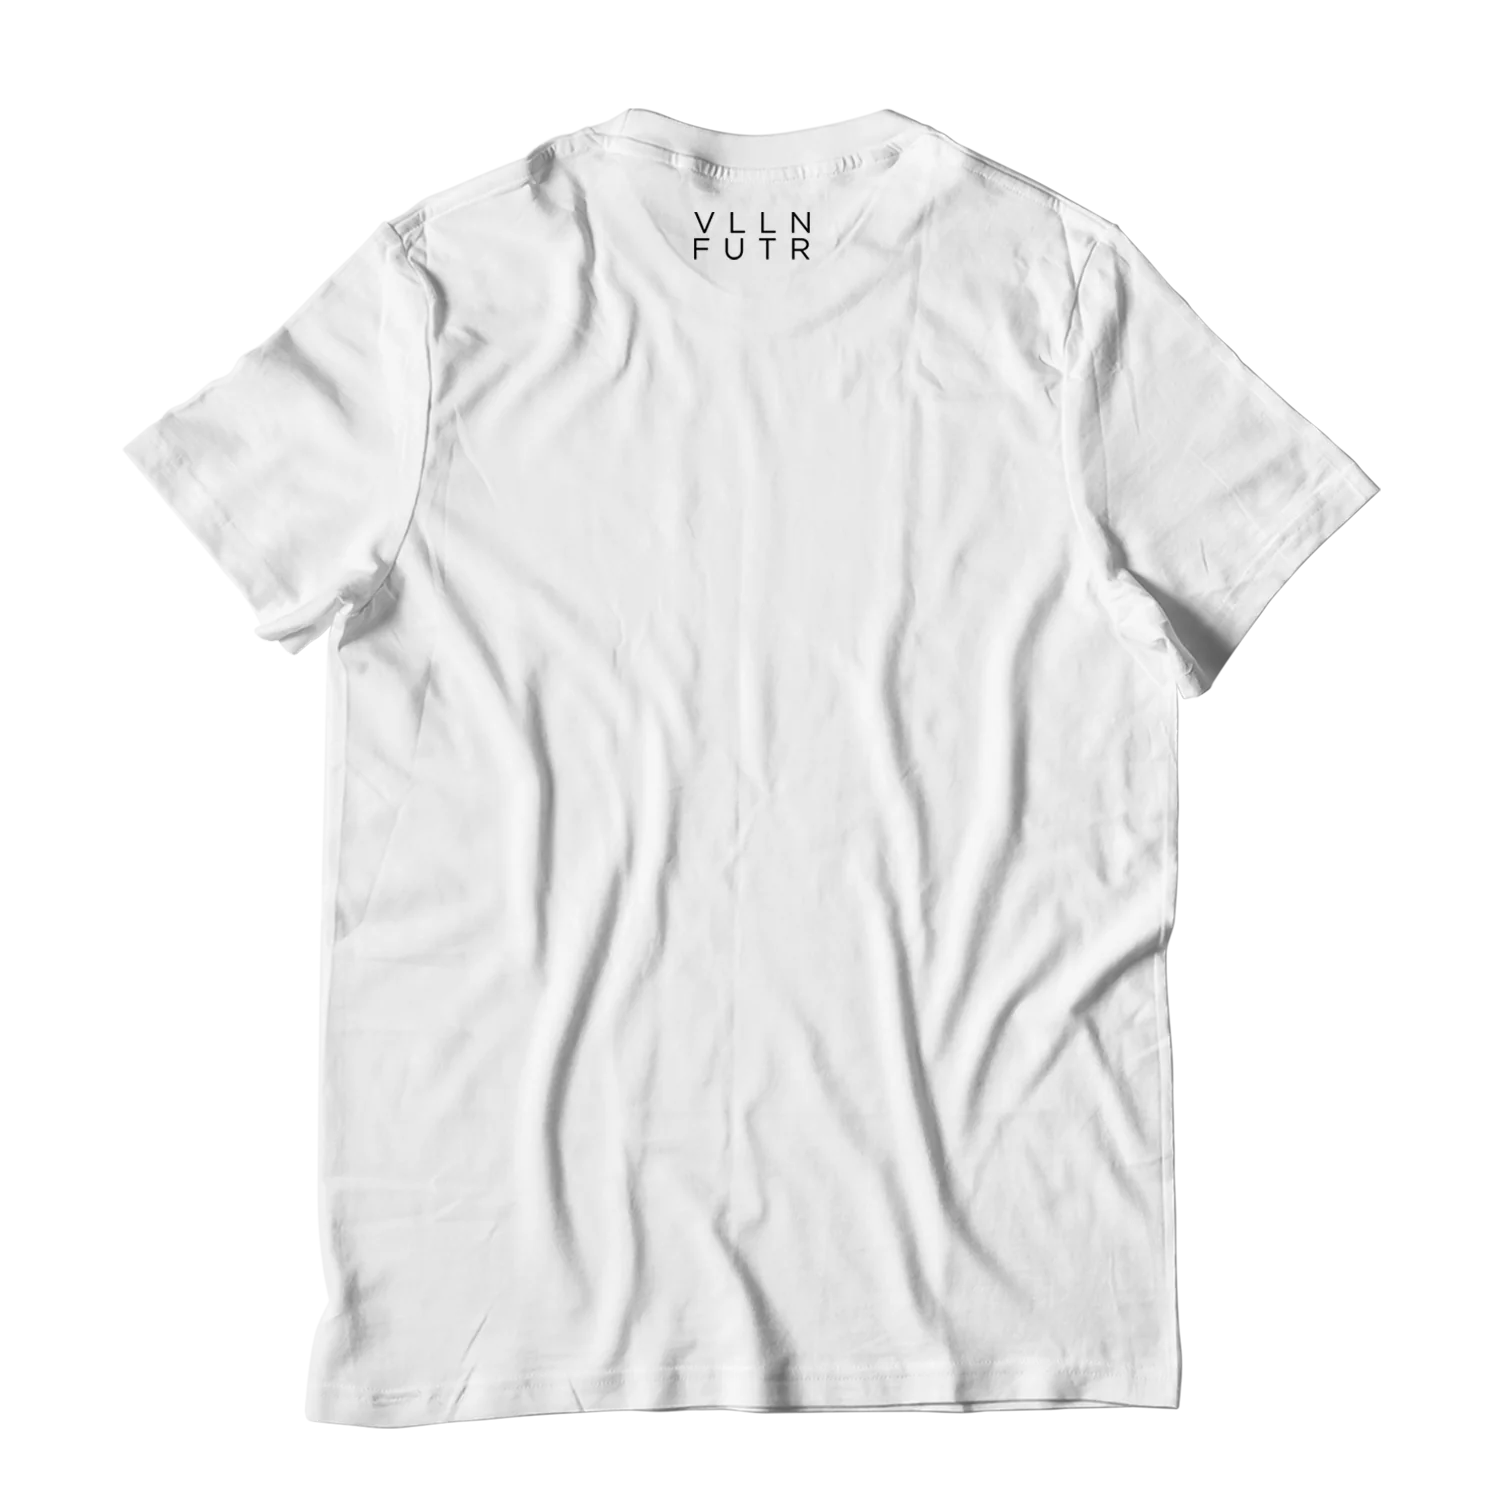 Vamp Lover Bitmap T-shirt White By Vlln Futr